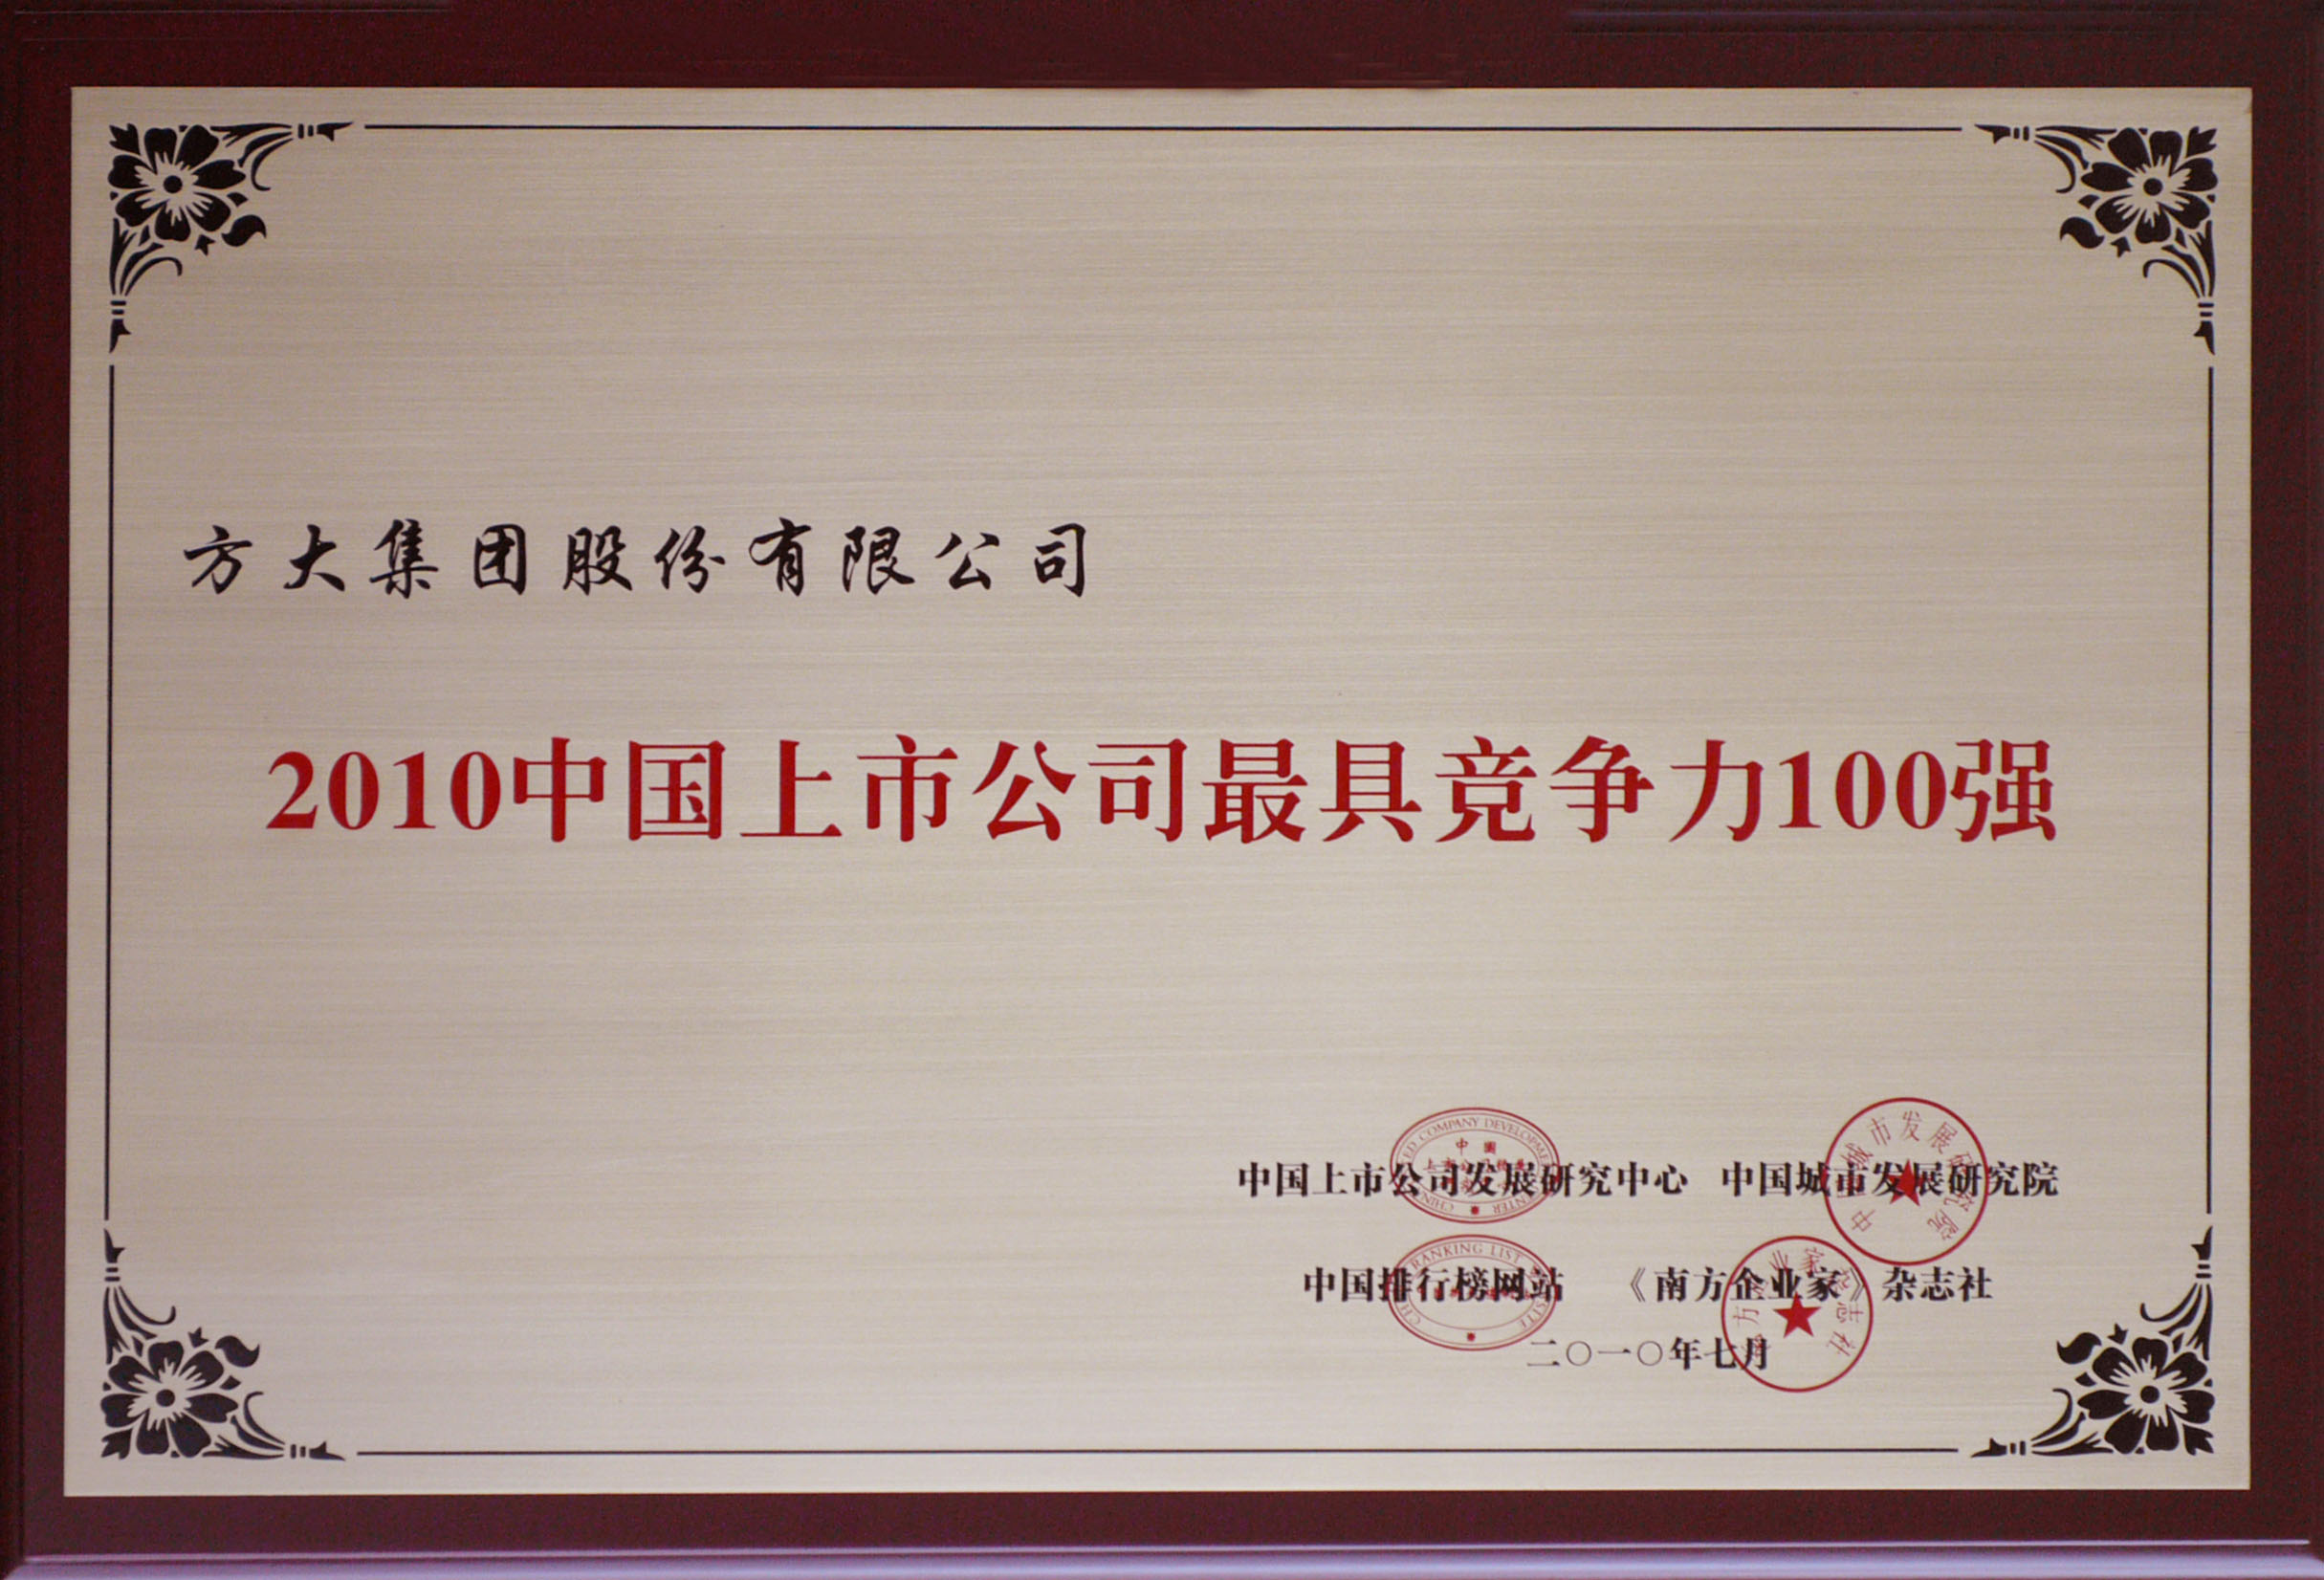 2010 方大集团获评“中国上市公司最具竞争力100强”